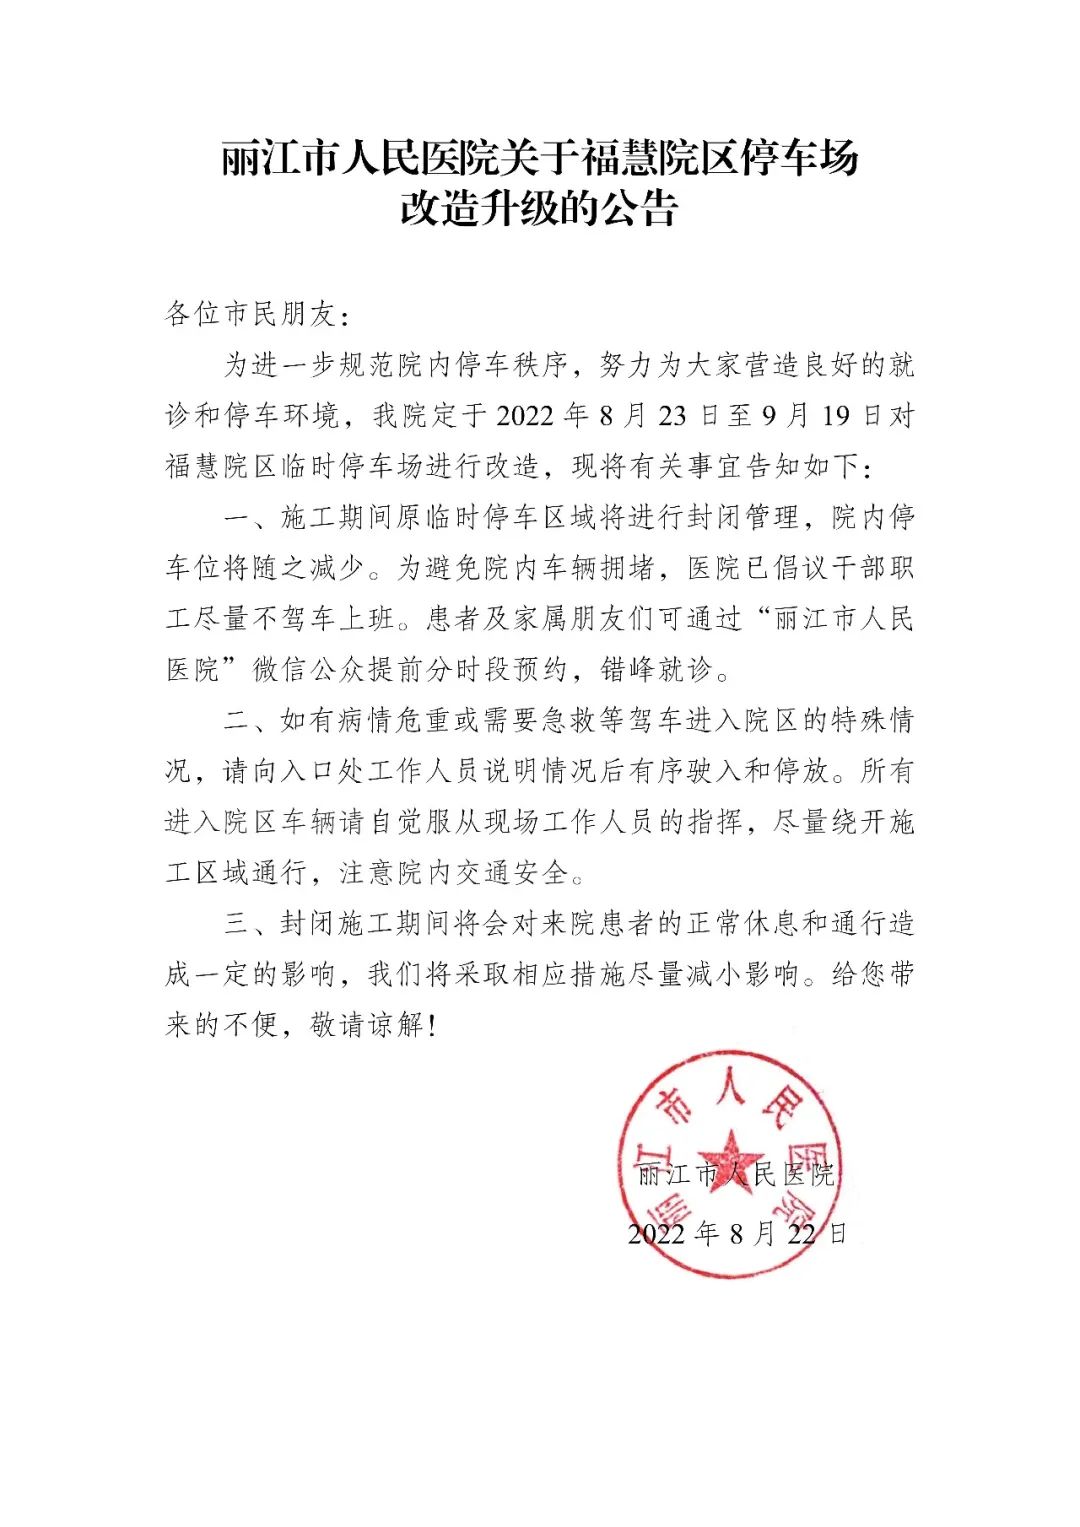 8月23日 至9月19日 丽江市人民医院福慧院区停车场改造升级